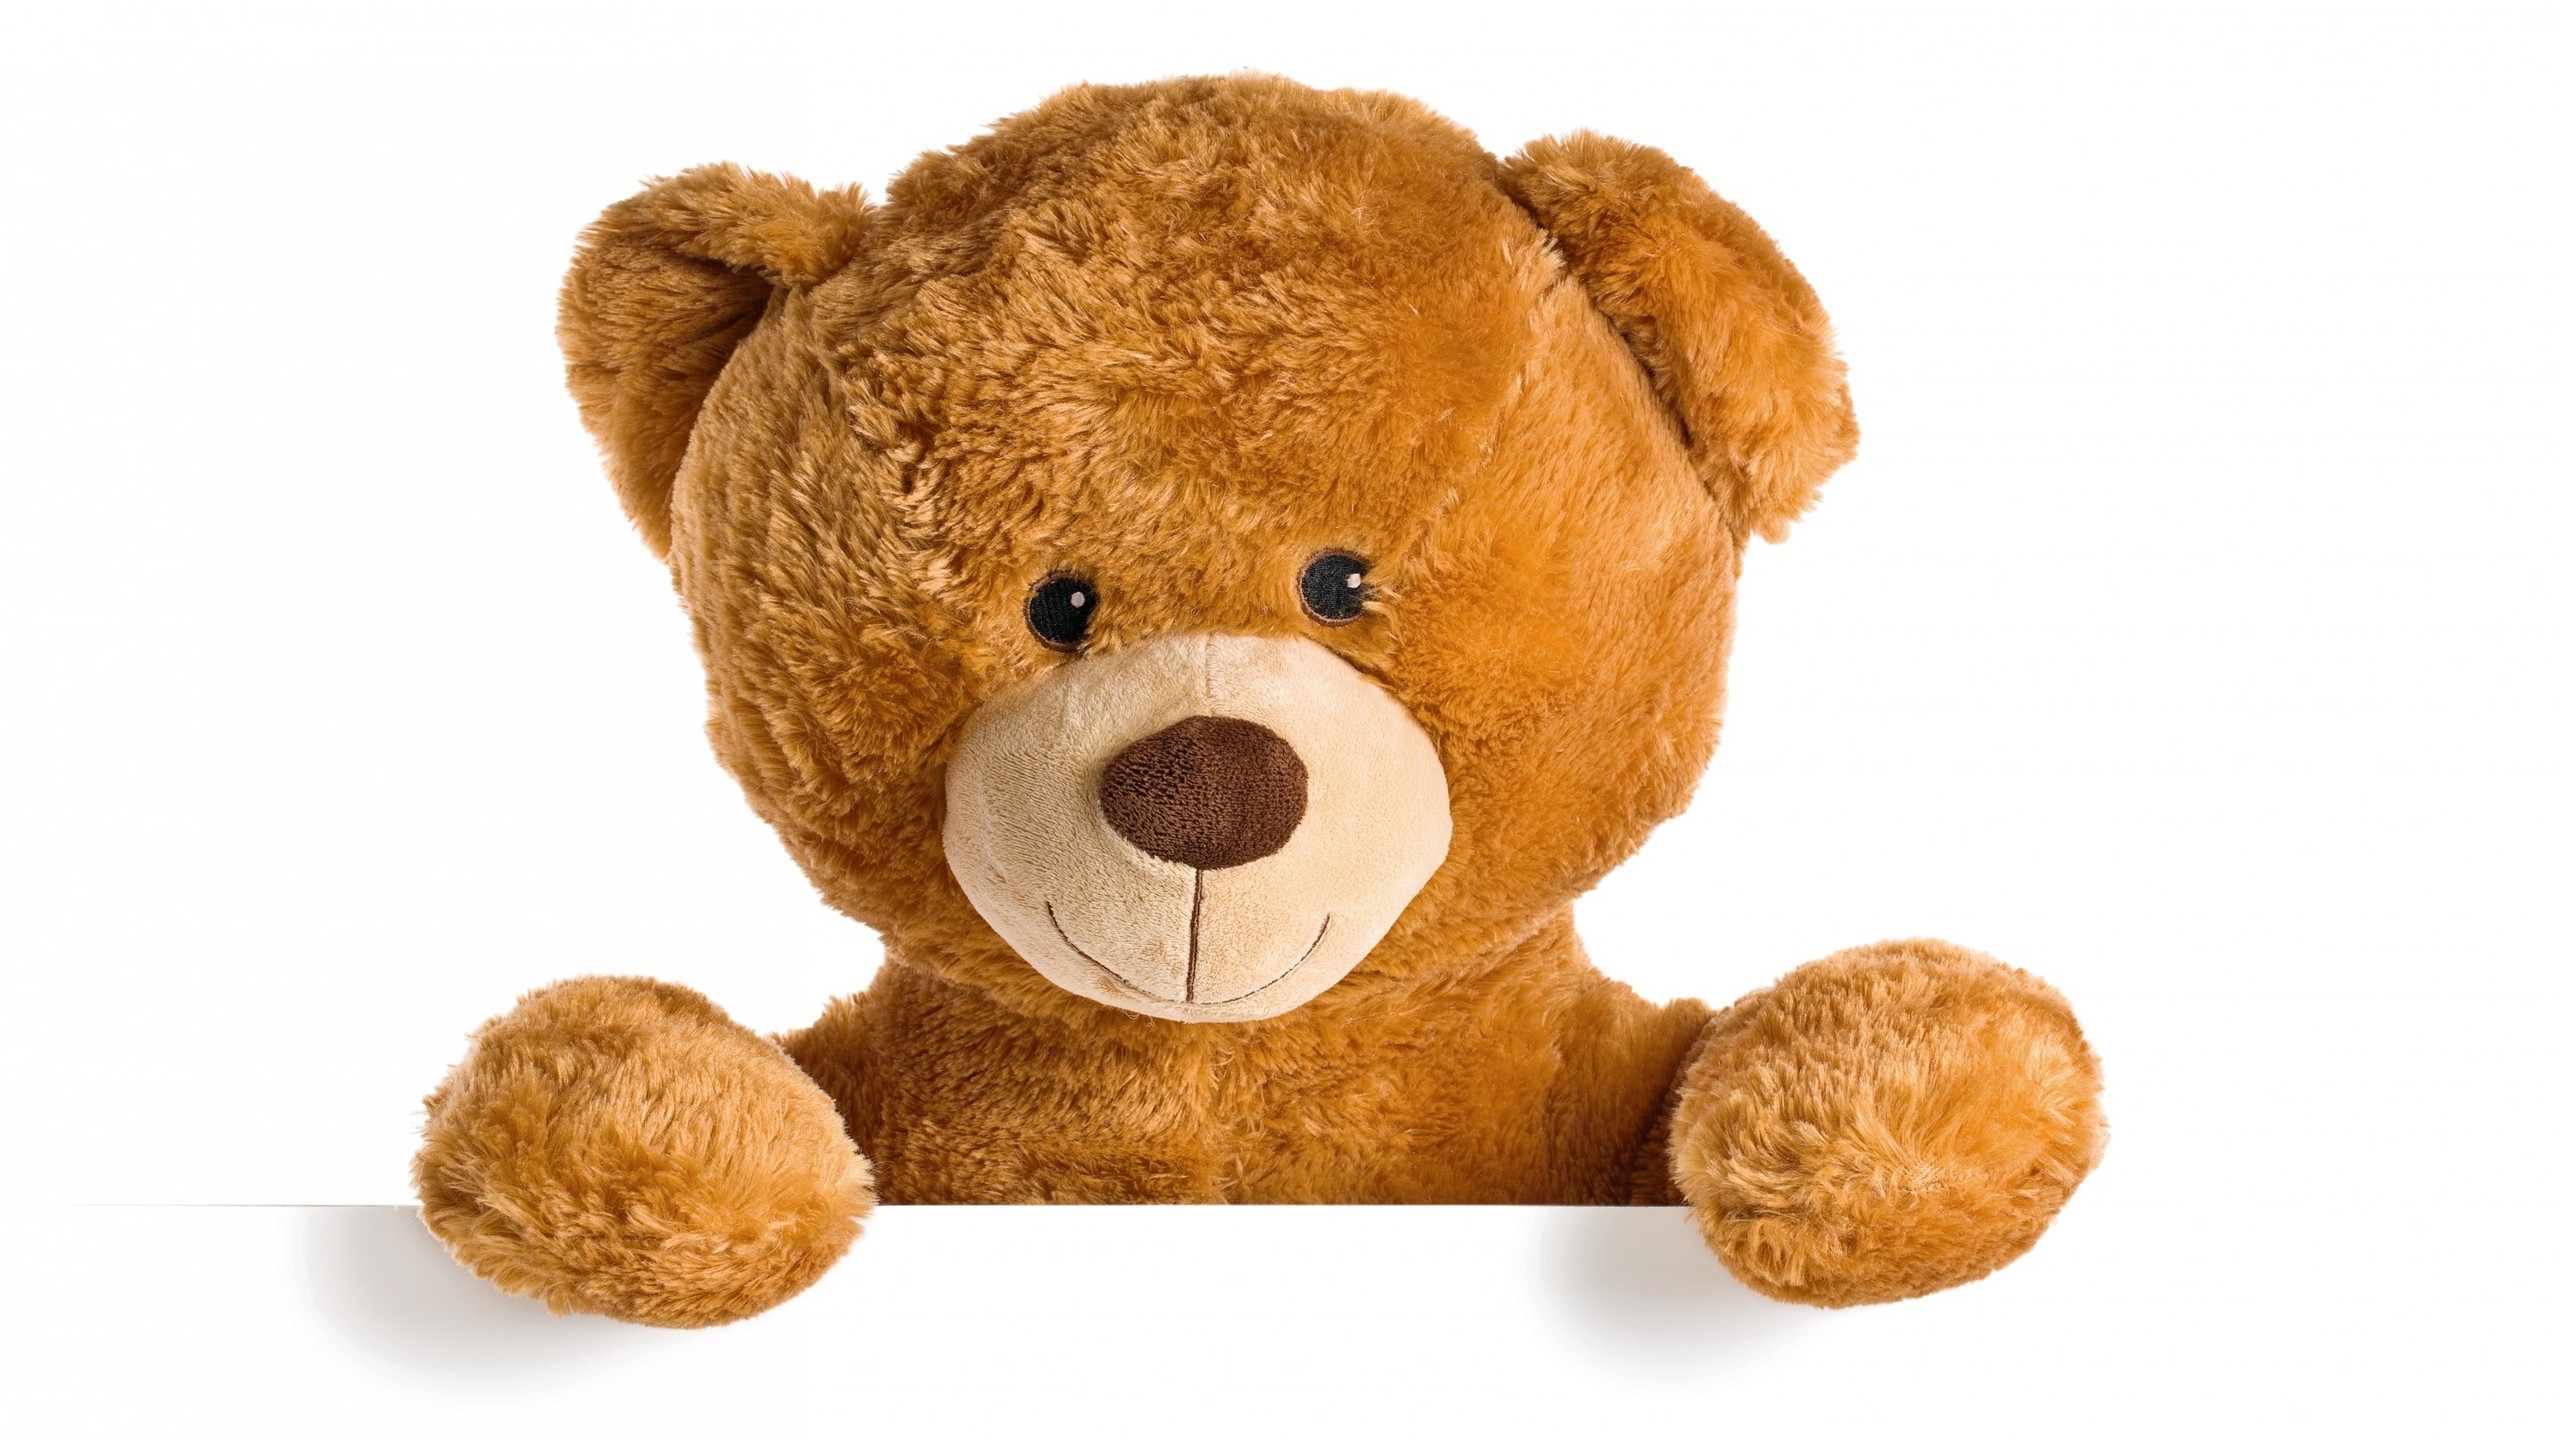 Cute Teddy Bear for 2560x1440 HDTV resolution